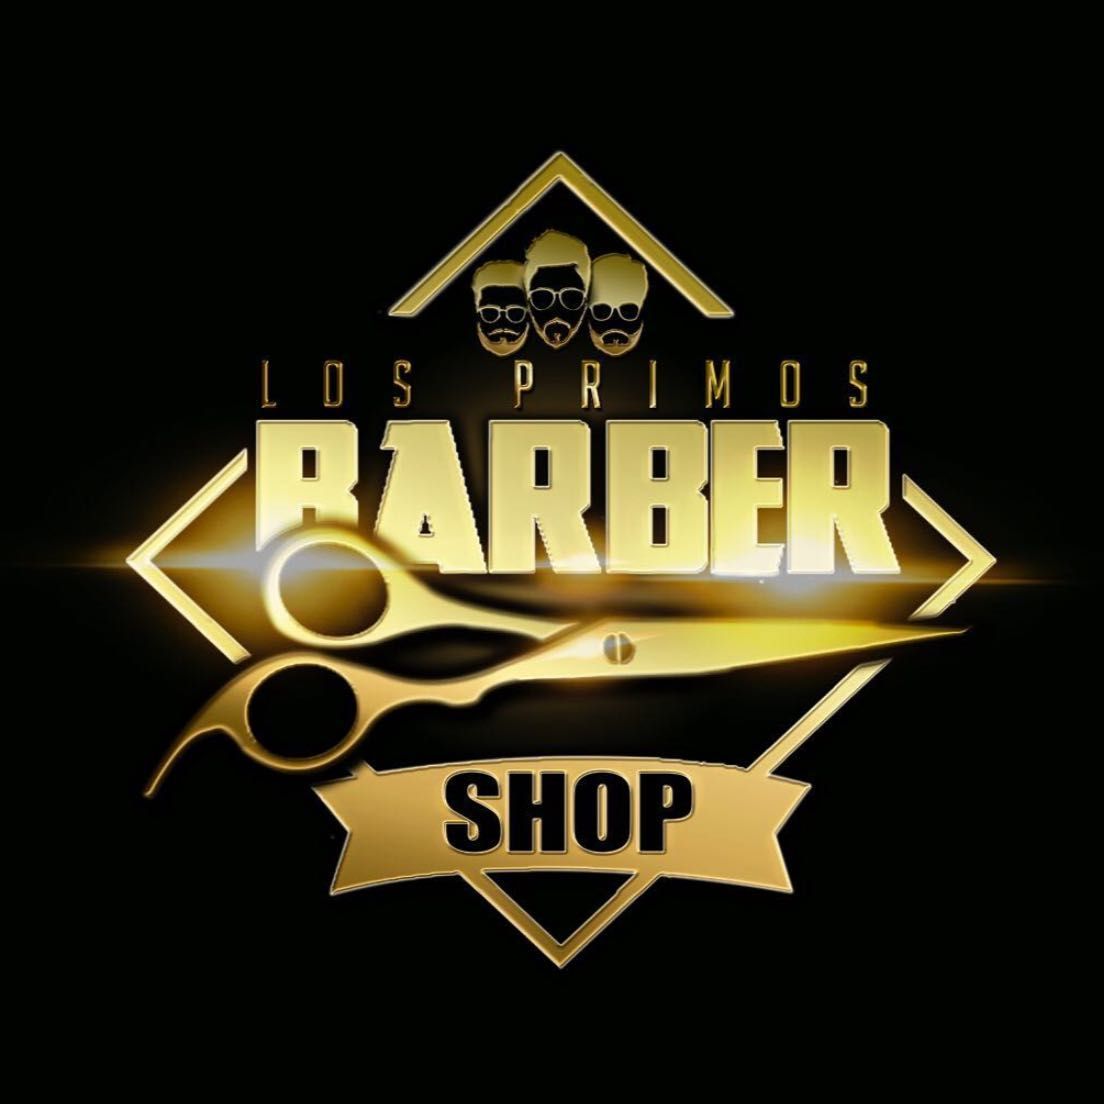 Los primos barbershop edwin, 480 Union Ave, Los promos barbershop, Westbury, 11590